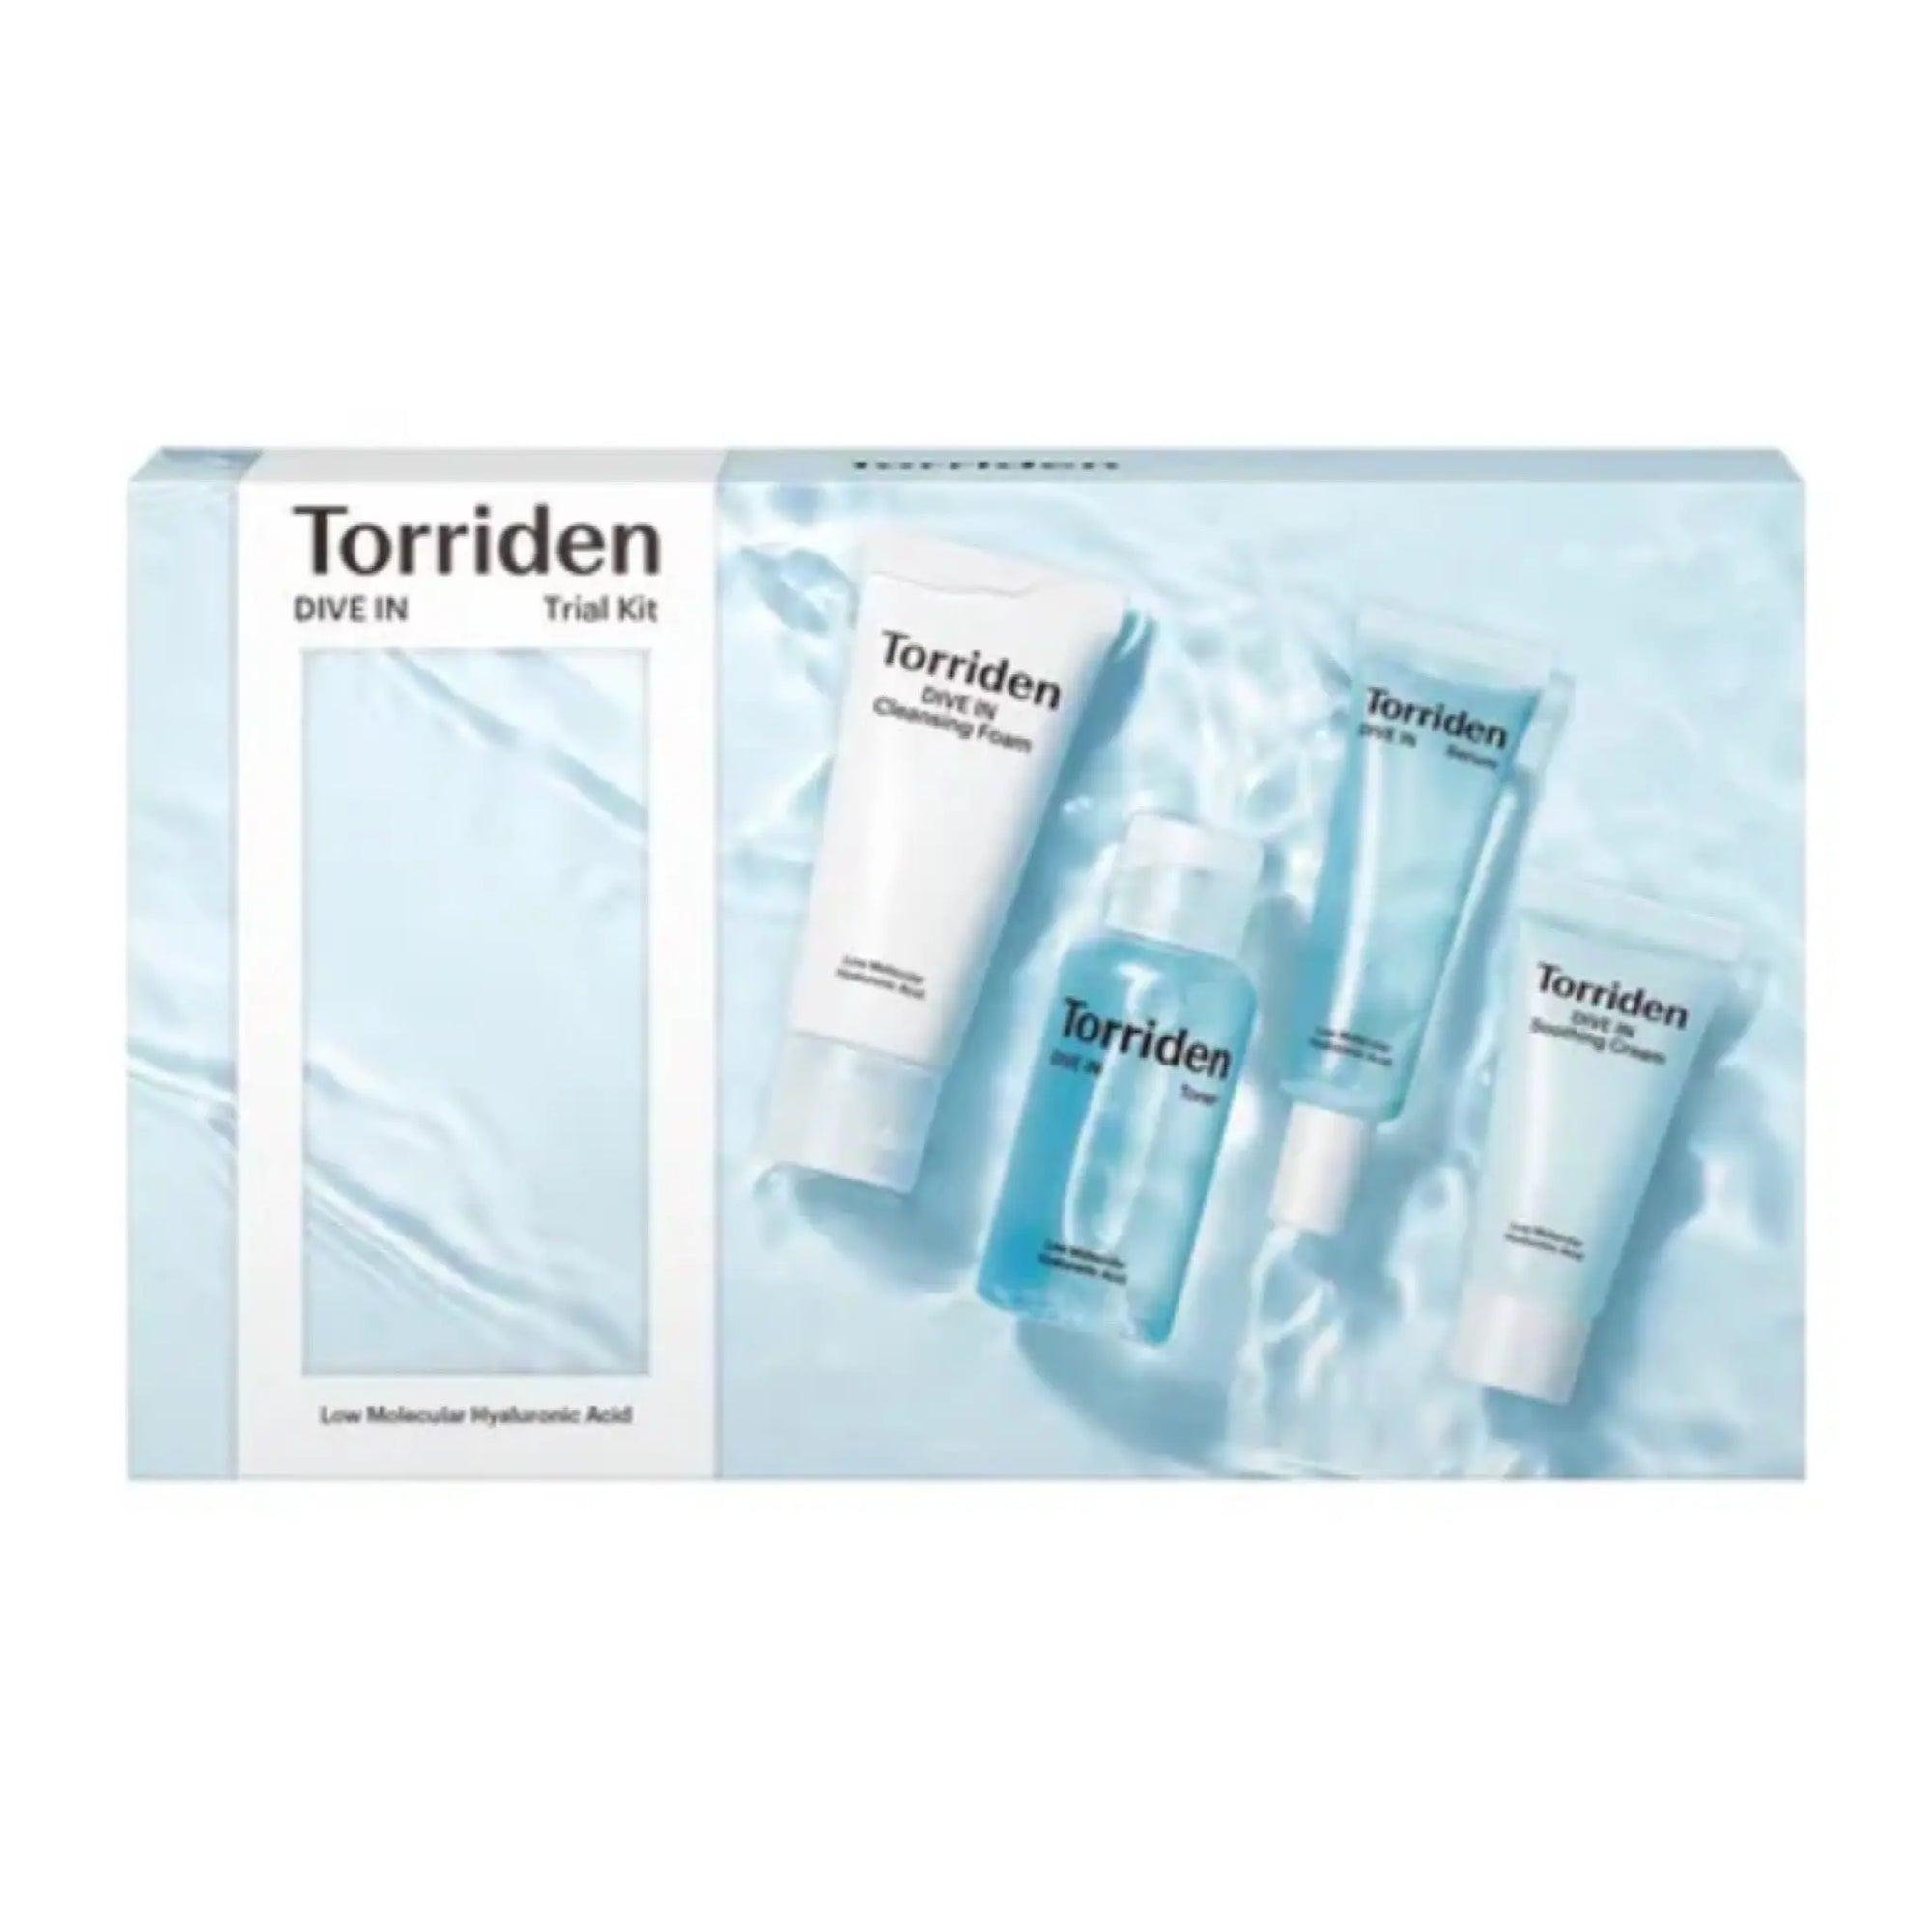 Torriden - DIVE-IN Skin Care Trial Kit Torriden